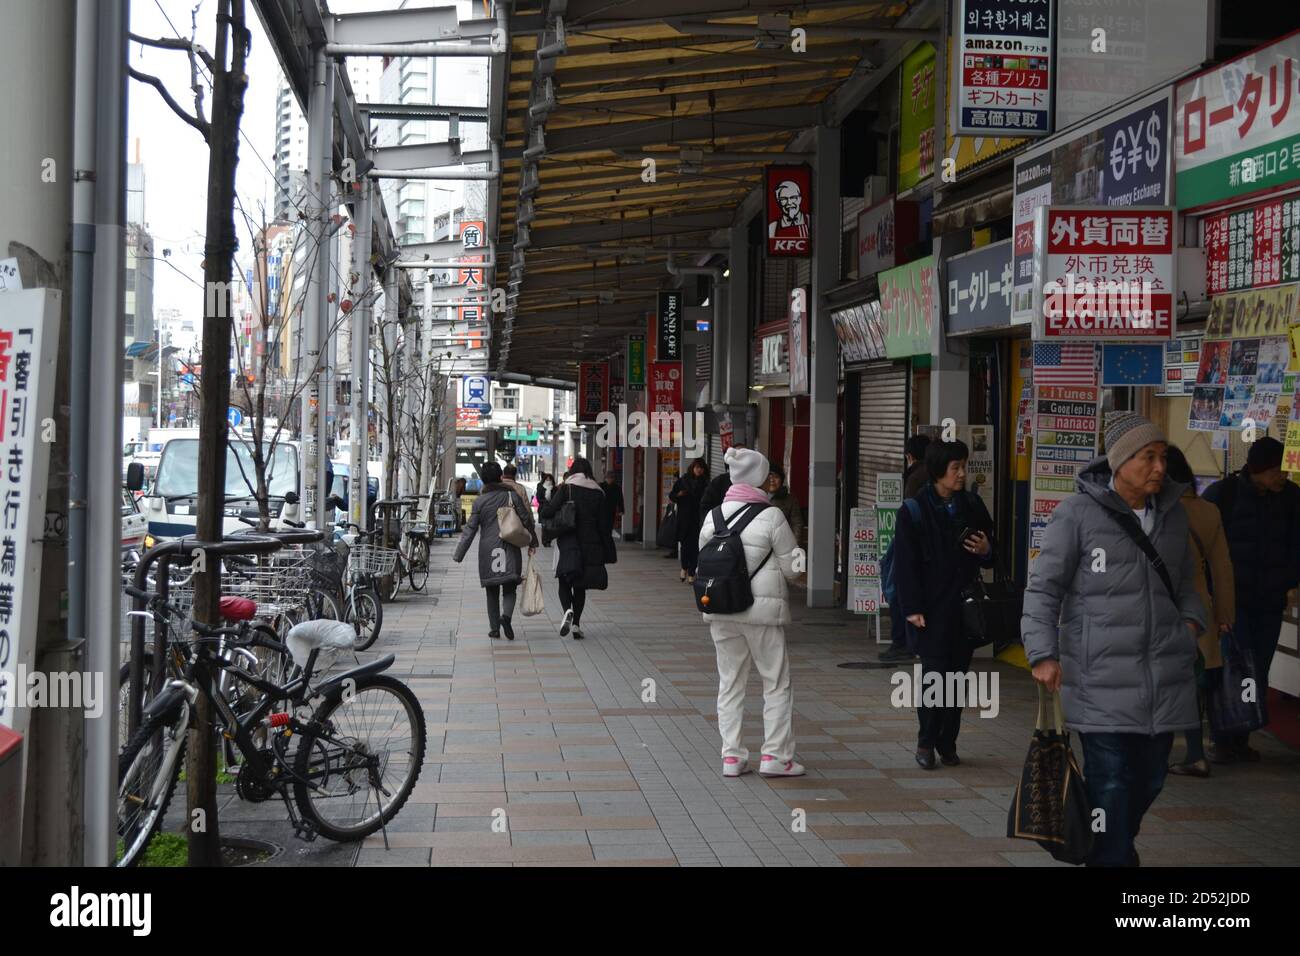 Tokyo, Japan-2/24/16: Das tägliche Leben in Tokyo, Leute, die die Straßen entlang gehen und verschiedene Dinge tun; auf der rechten Seite sehen wir mehrere Geschäfte, Restaurants, etc. Stockfoto